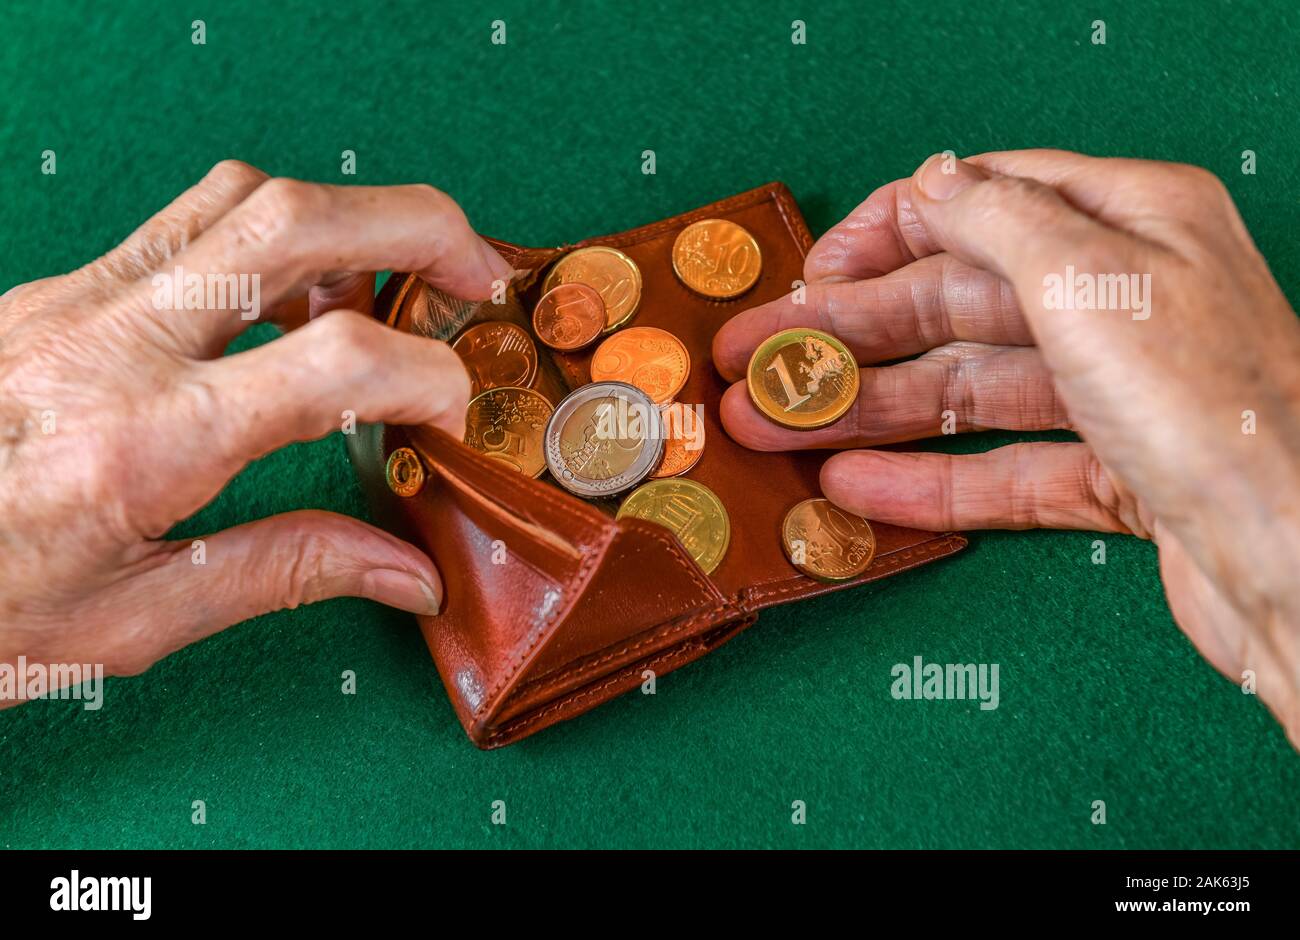 Pension Symbolfoto, les mains d'une vieille femme, pensionné, avec de l'argent dans son portefeuille, Allemagne Banque D'Images